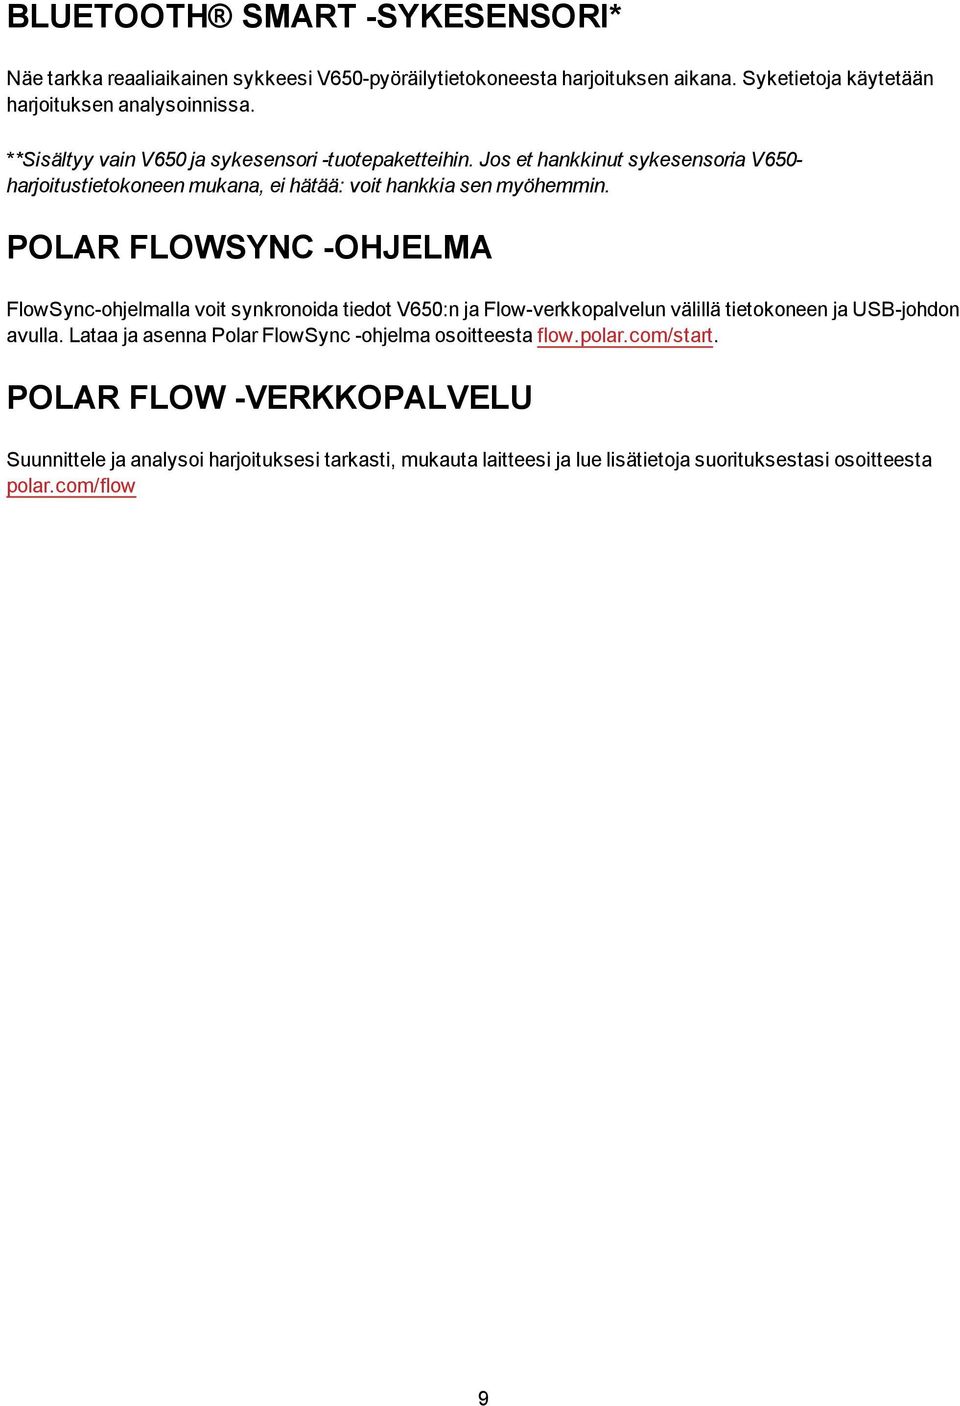 POLAR FLOWSYNC -OHJELMA FlowSync-ohjelmalla voit synkronoida tiedot V650:n ja Flow-verkkopalvelun välillä tietokoneen ja USB-johdon avulla.